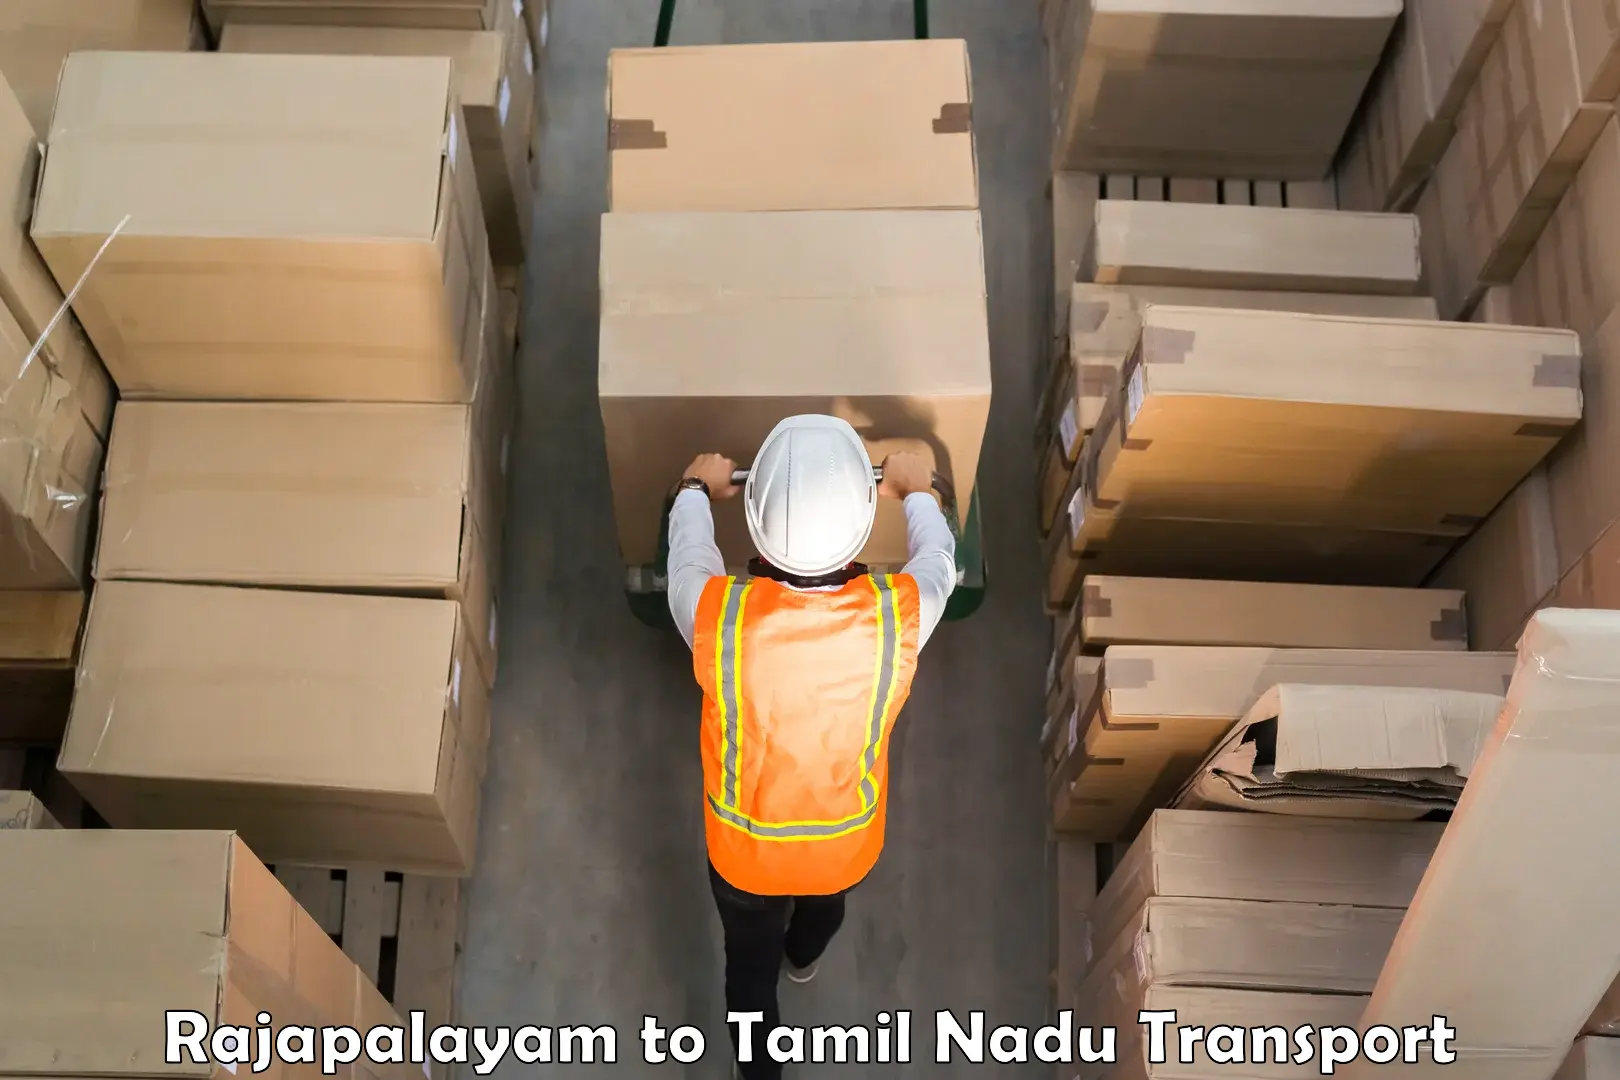 Cargo transport services Rajapalayam to Tambaram